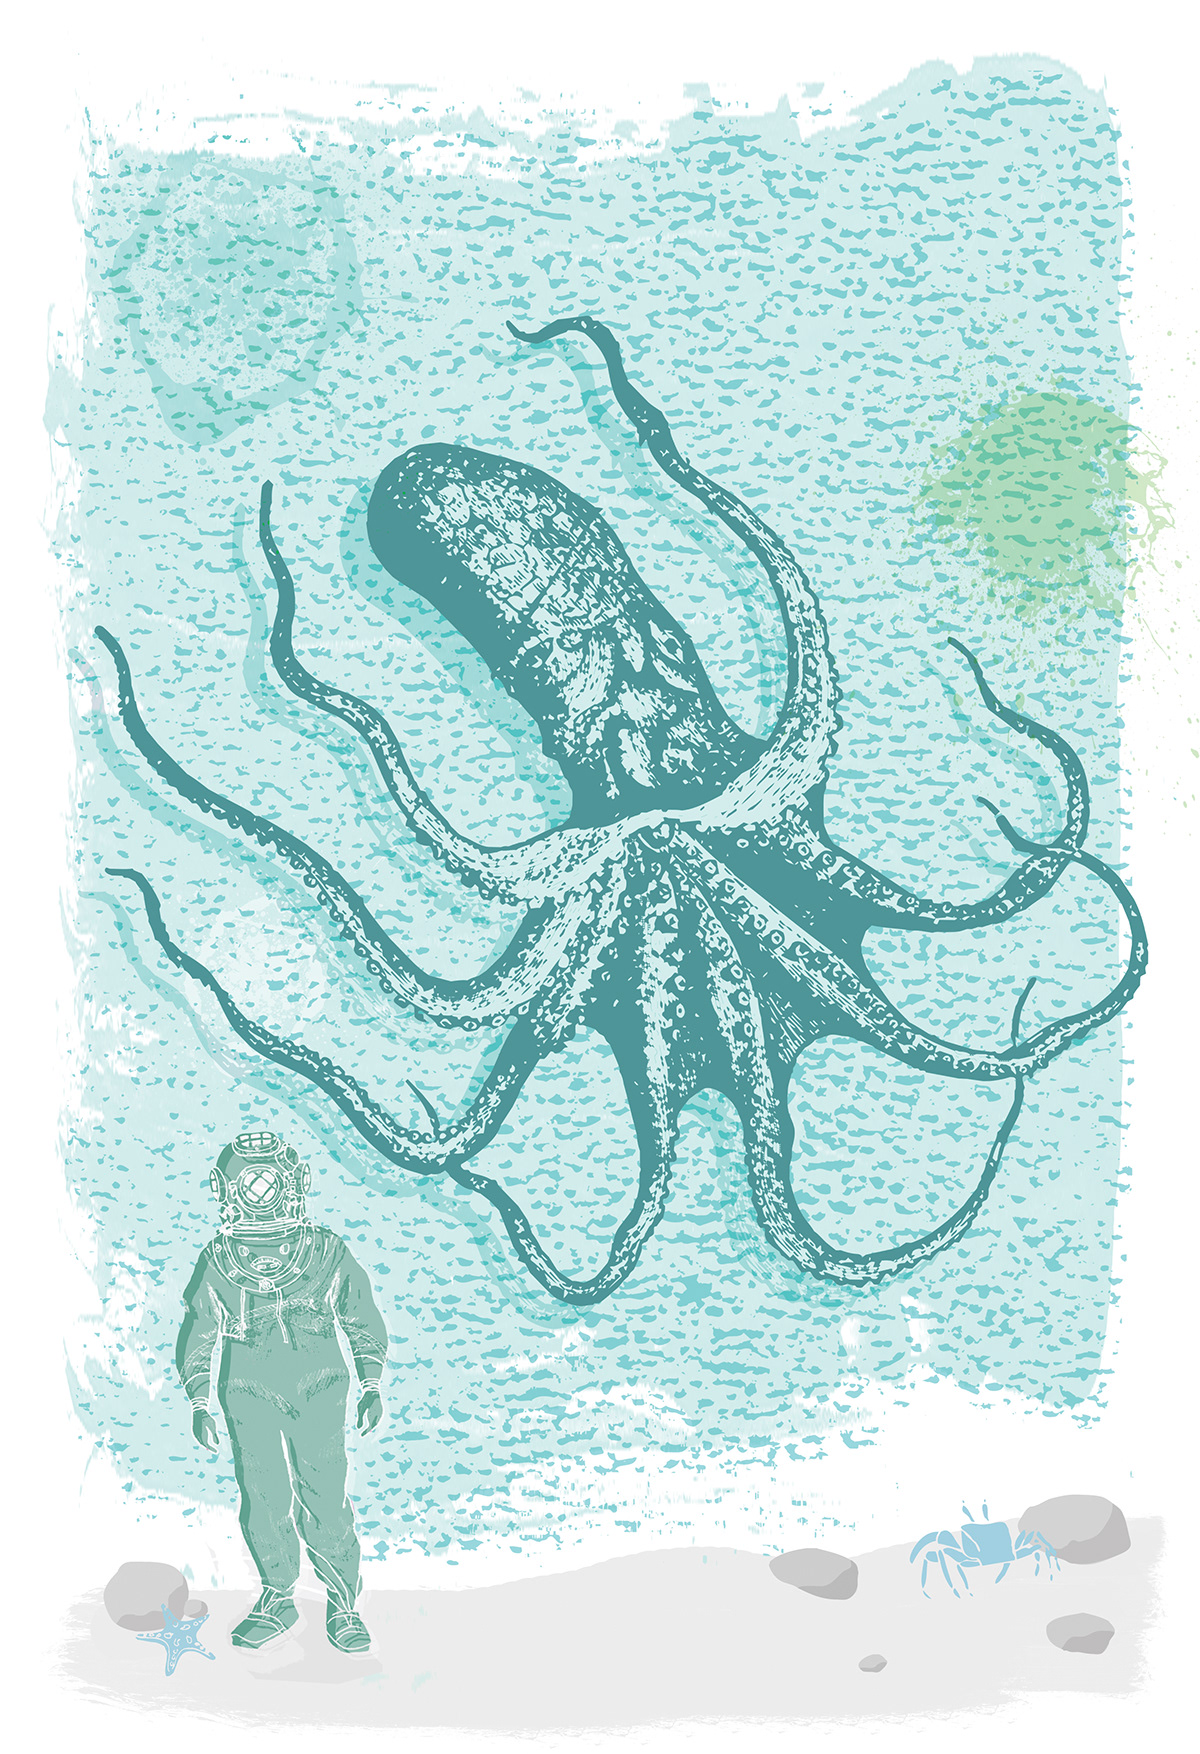 John Stewart johnnystewart75 letterpress sea life octopus Deep Sea Diver under water oceanic salt water life